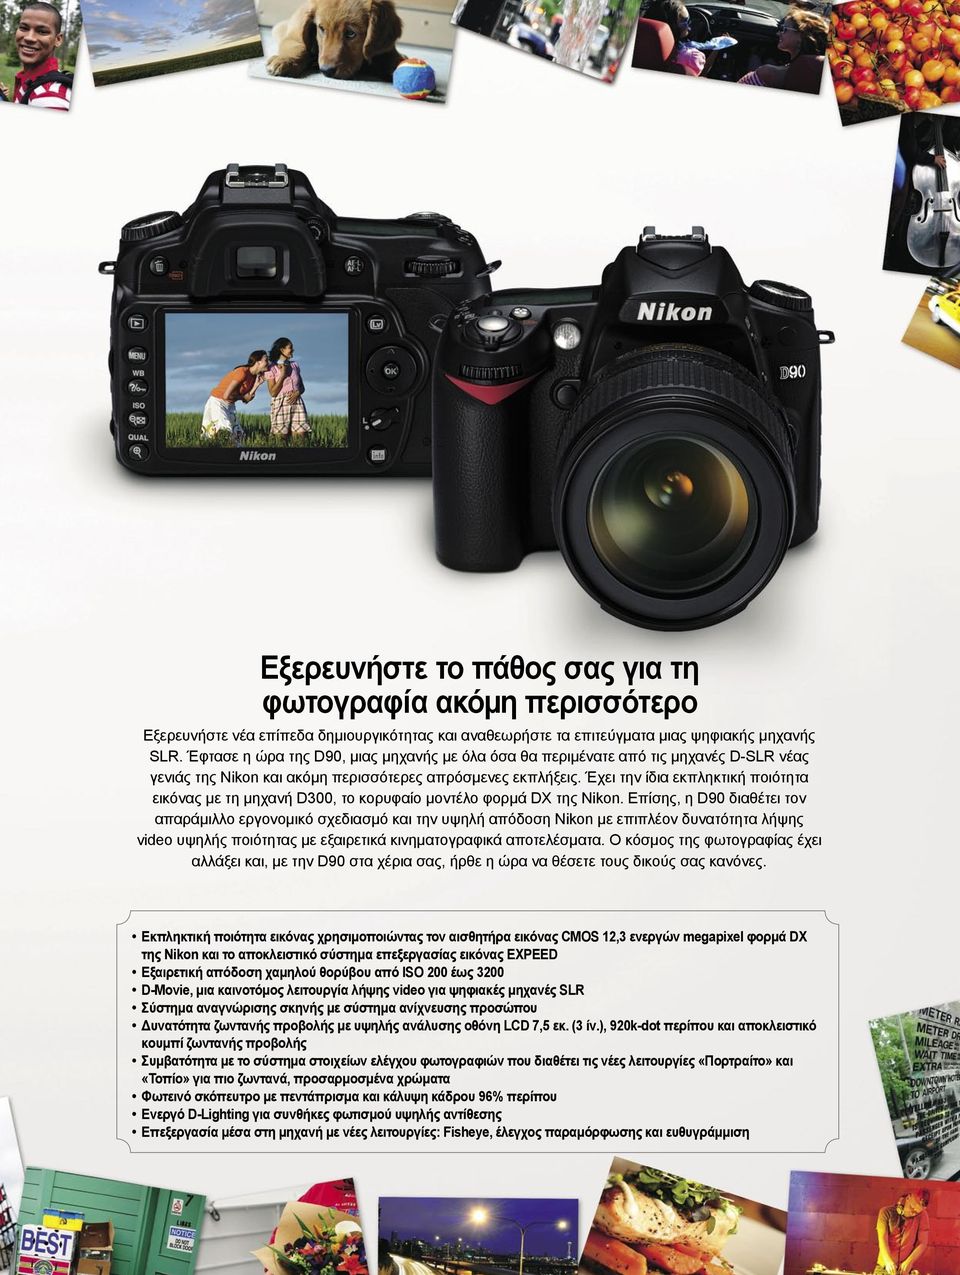 Έχει την ίδια εκπληκτική ποιότητα εικόνας με τη μηχανή D300, το κορυφαίο μοντέλο φορμά DX της Nikon.